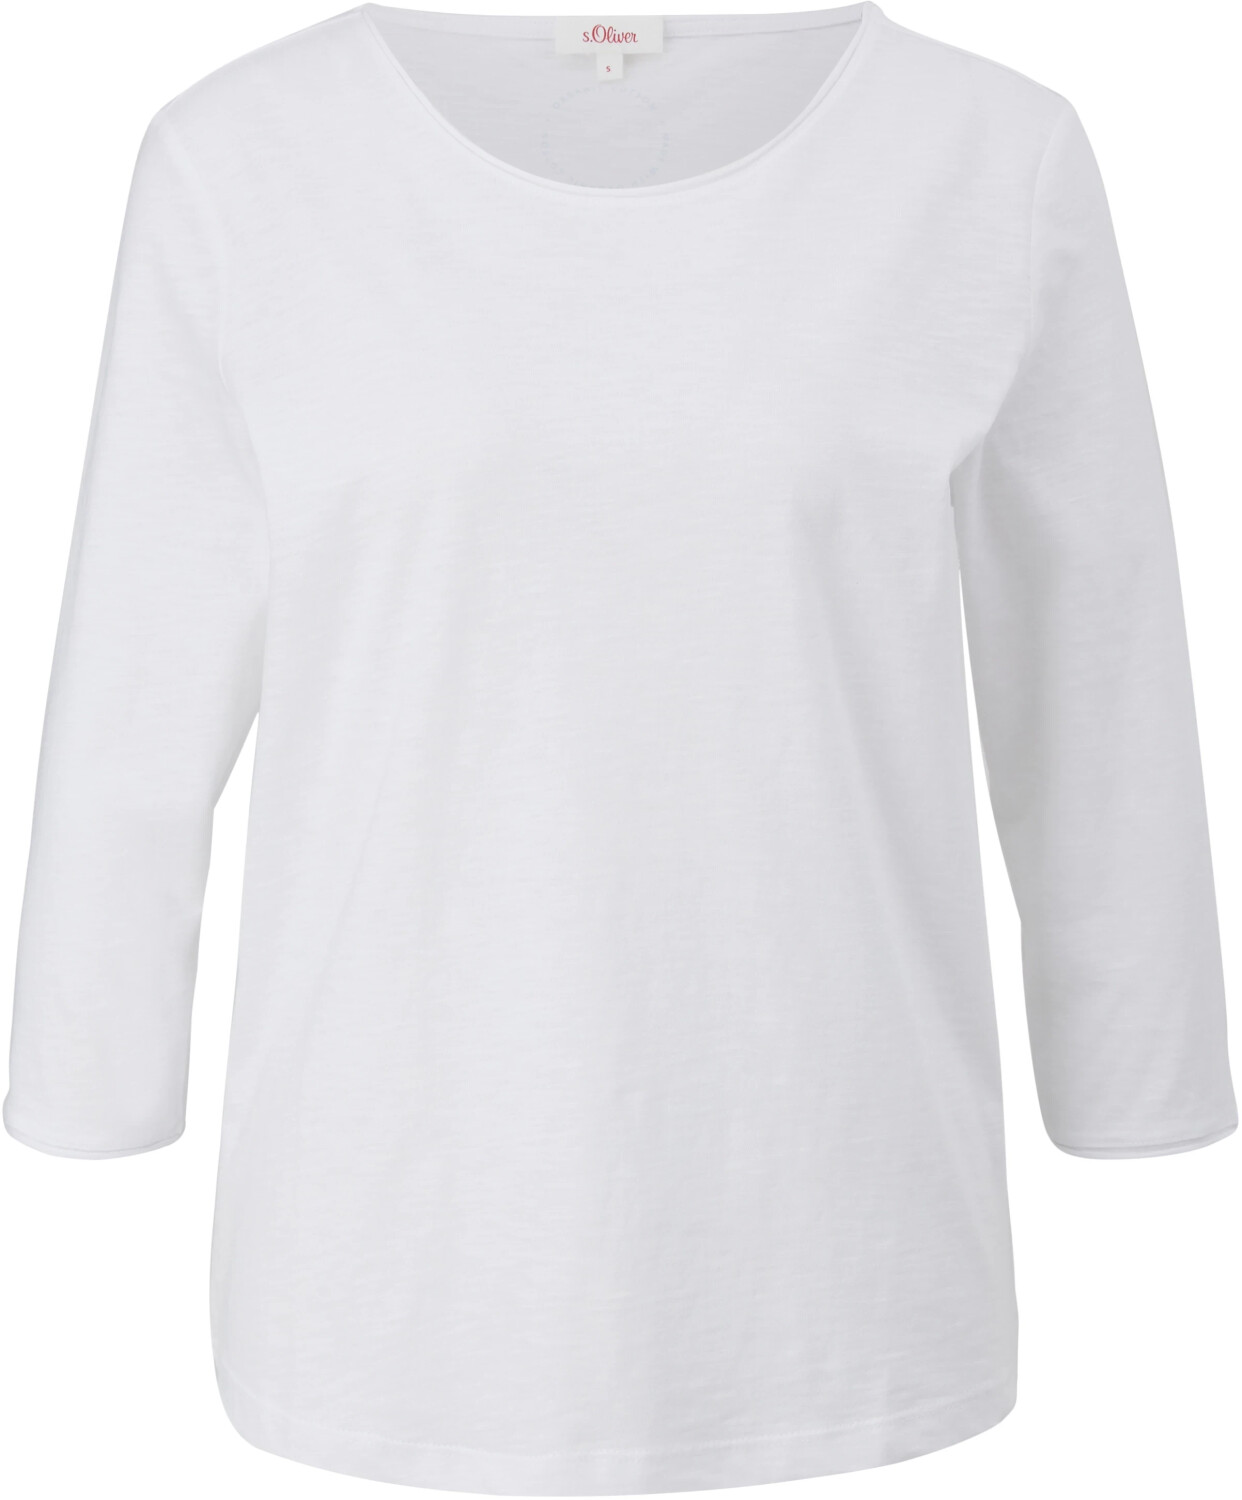 Sehr beliebtes Standardprodukt S.Oliver T-Shirt aus Baumwolle € bei | (2112026.0100) Preisvergleich weiß 16,99 ab